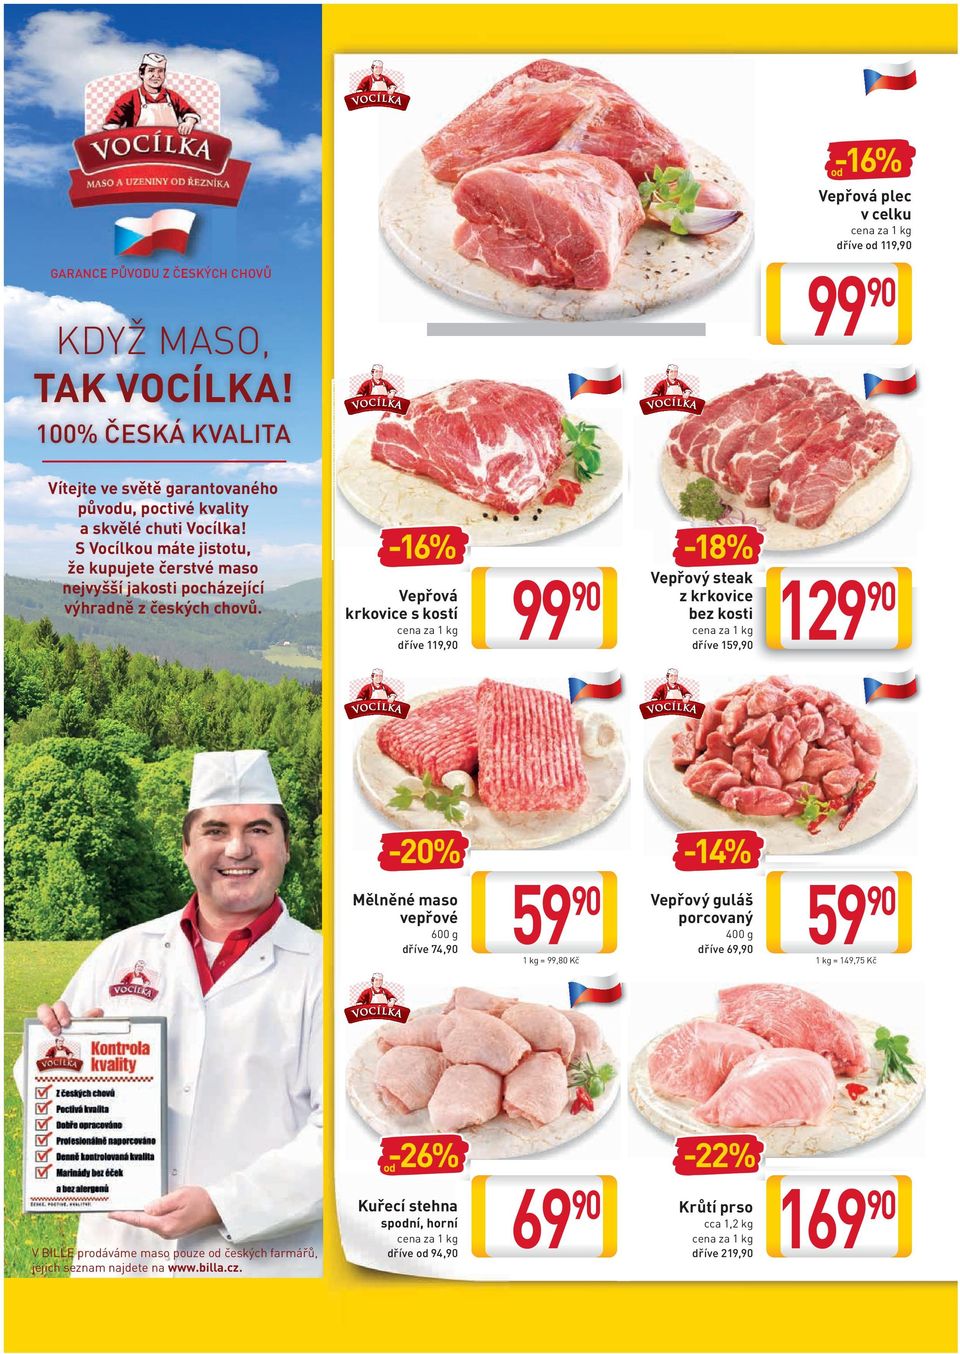 S Vocílkou máte jistotu, že kupujete čerstvé maso nejvyšší jakosti pocházející výhradně z českých chovů.